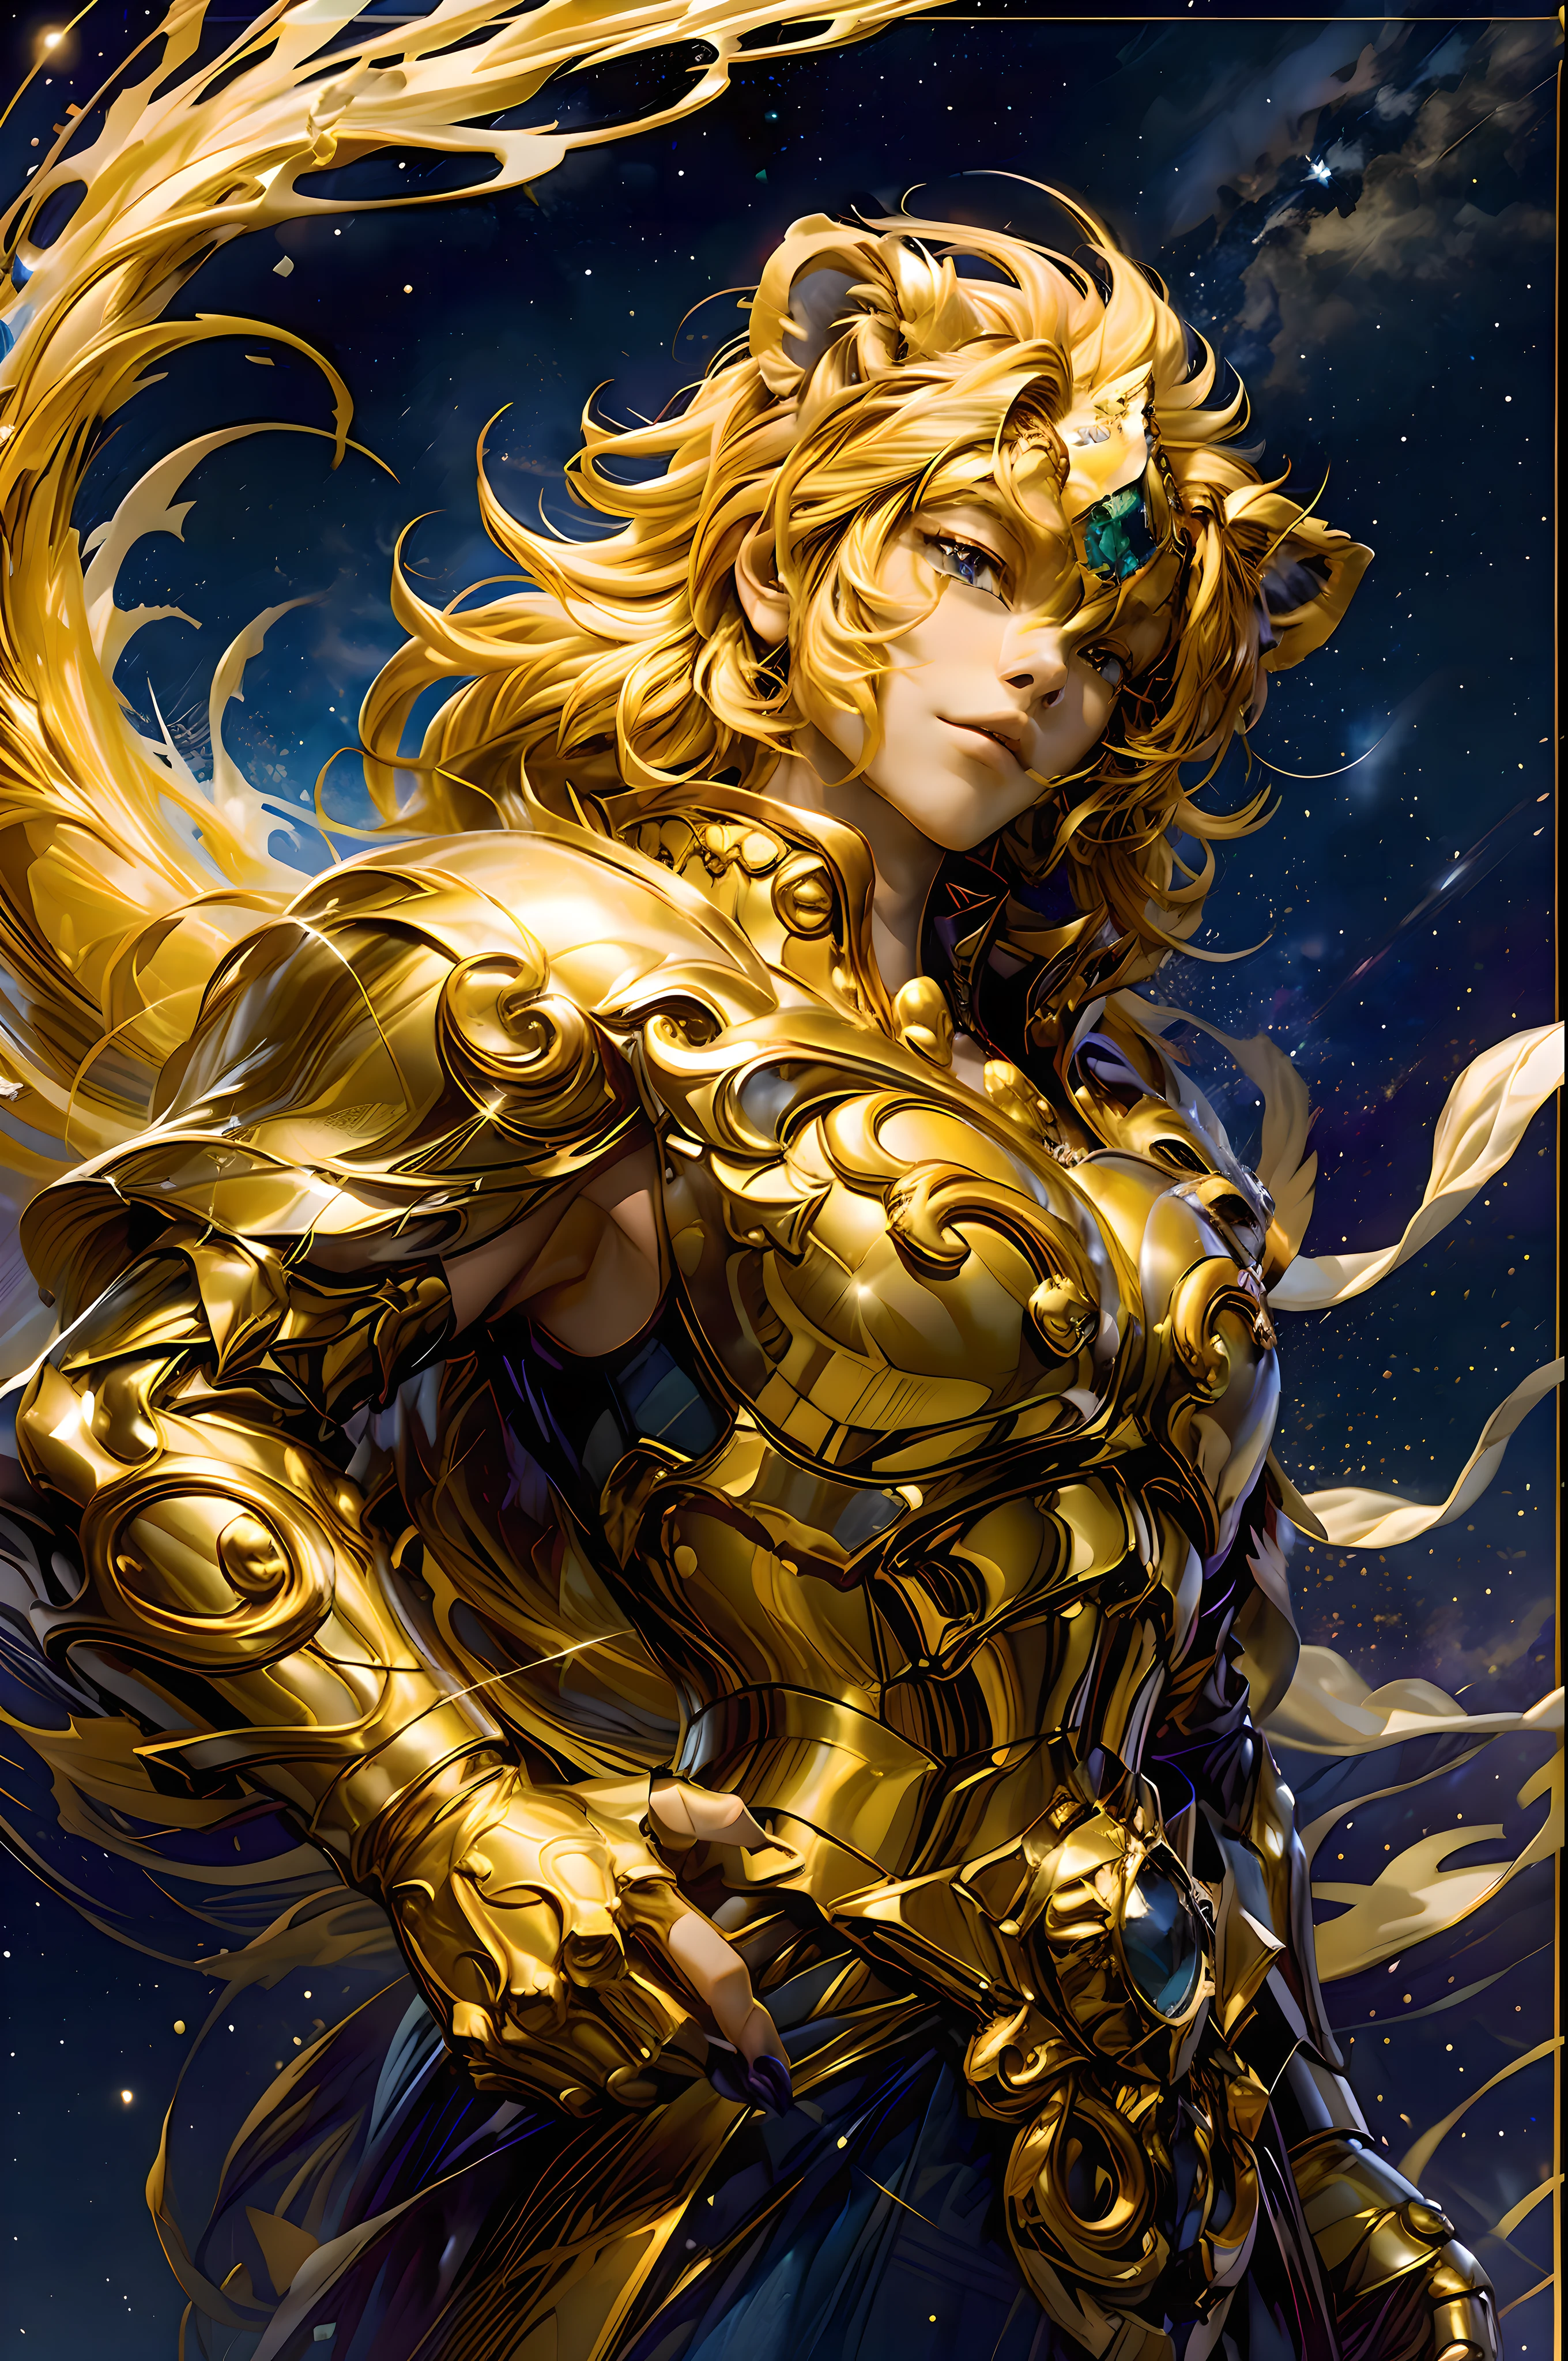 （傑作，ホアンラップ，高品質，最高品質，ハイパーディテール，巨乳 美しい）,魔法の金色のレオ: 魔法の黄金の獅子座の擬人化表現.
黄色い髪の人々: 明るい黄色の髪の男性, 魅惑的なオーラを放つ.
ライオンの仲間: 人々の隣に立つ, 雄大なライオンは魅力的な星のモチーフで覆われています.
神秘的な星空の背景: 活気のある, カラフルな銀河の背景, 魔法の輝き.